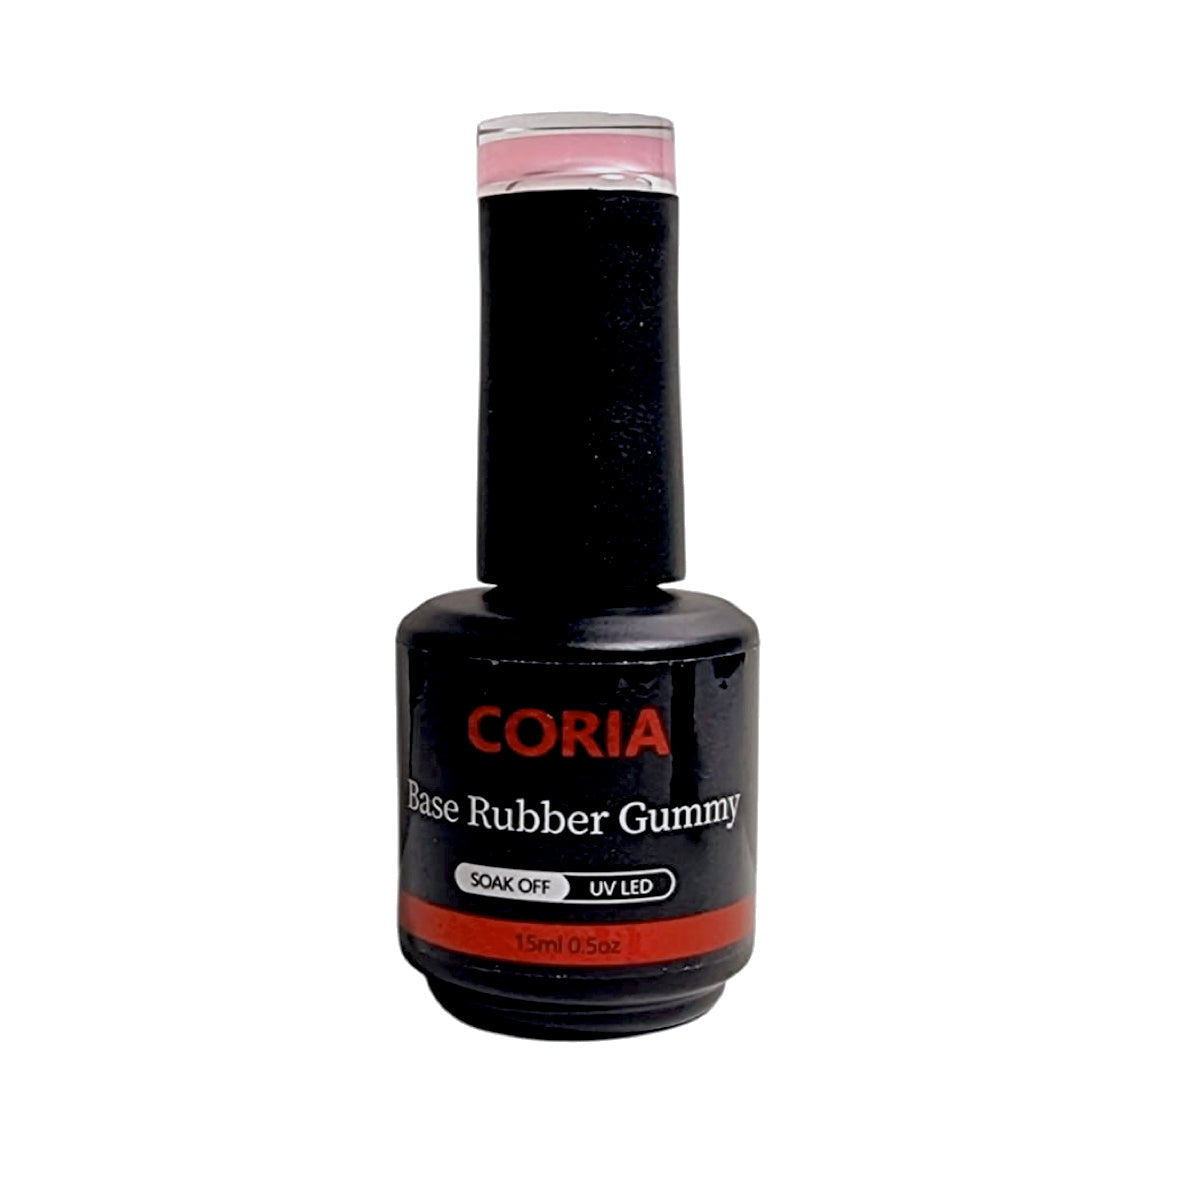 Baza Rubber Gummy Coria 042 Perfect French Dark Nude 15 ml